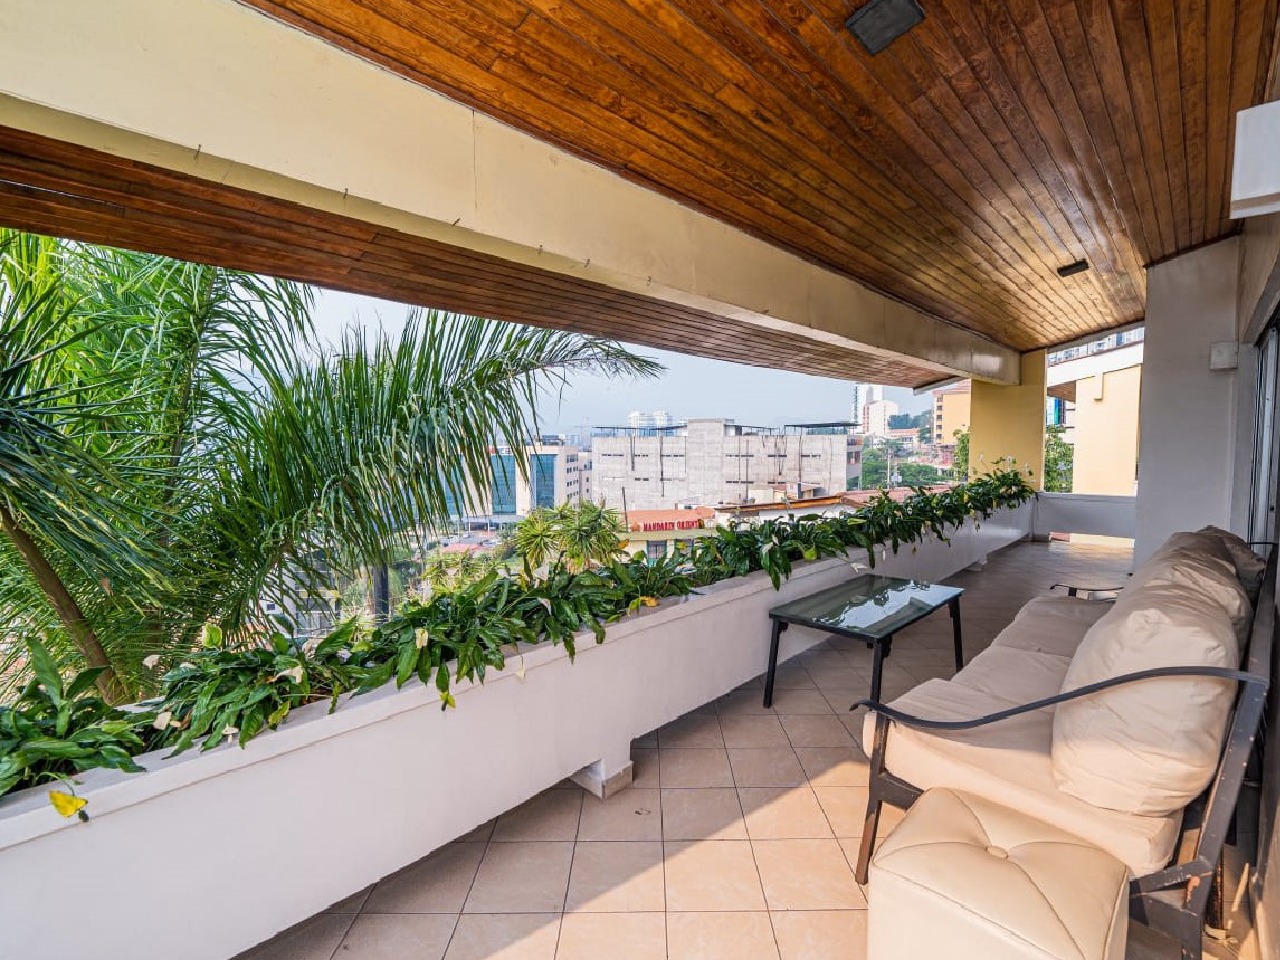 La terraza también cuenta con sillones cómodos y una mesa de centro siendo un espacio ideal para relajarte.